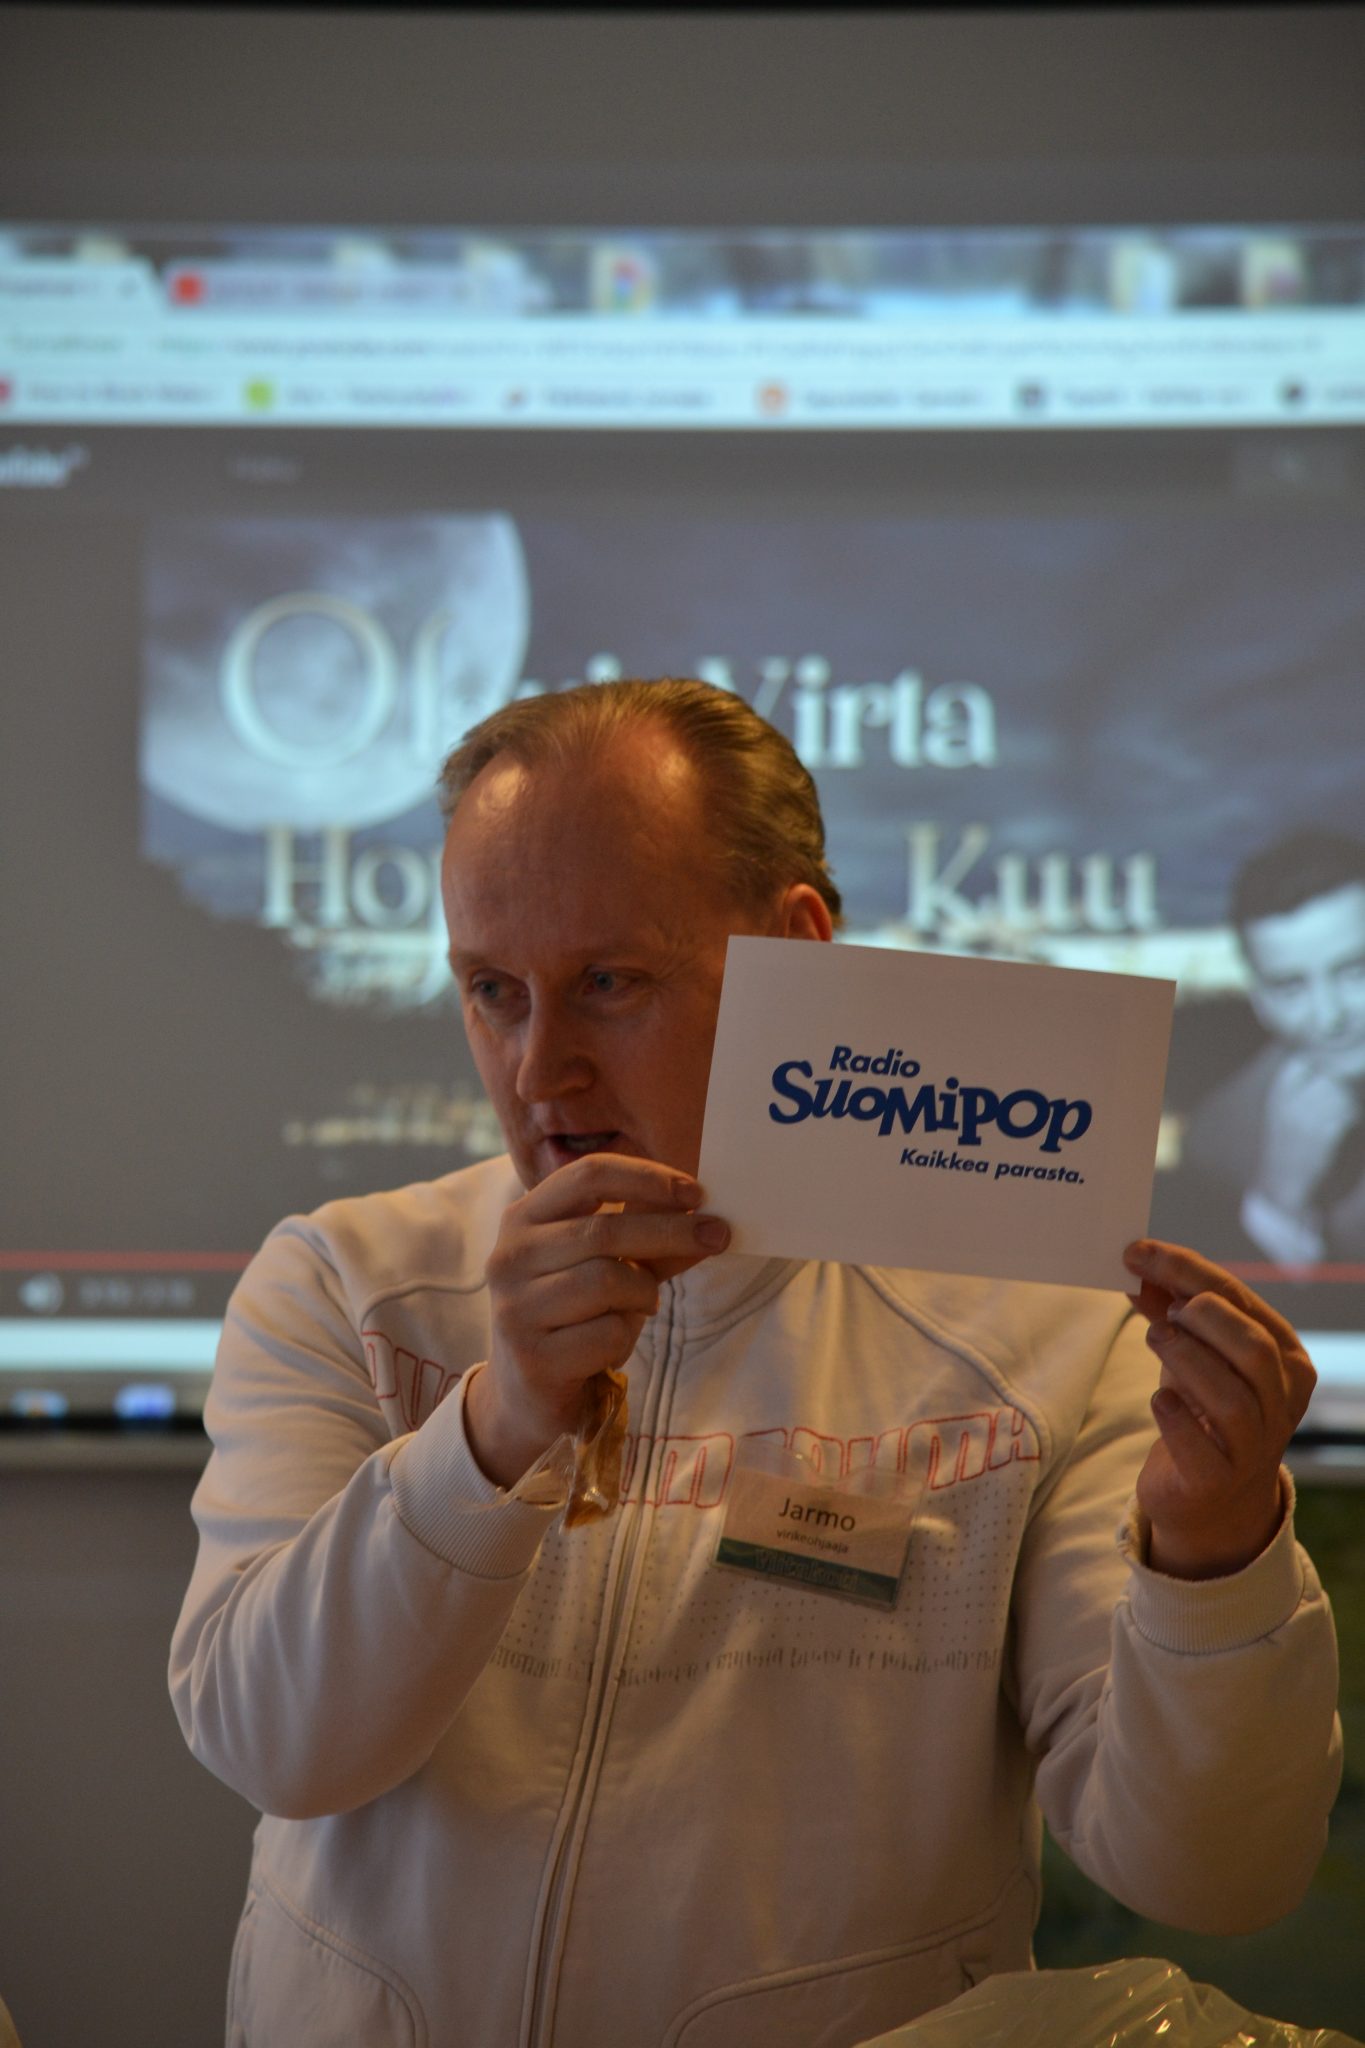 Virikeohjaaja Jarmo avasi Radio Sipmipopin lahjoittaman suukkalaatikon